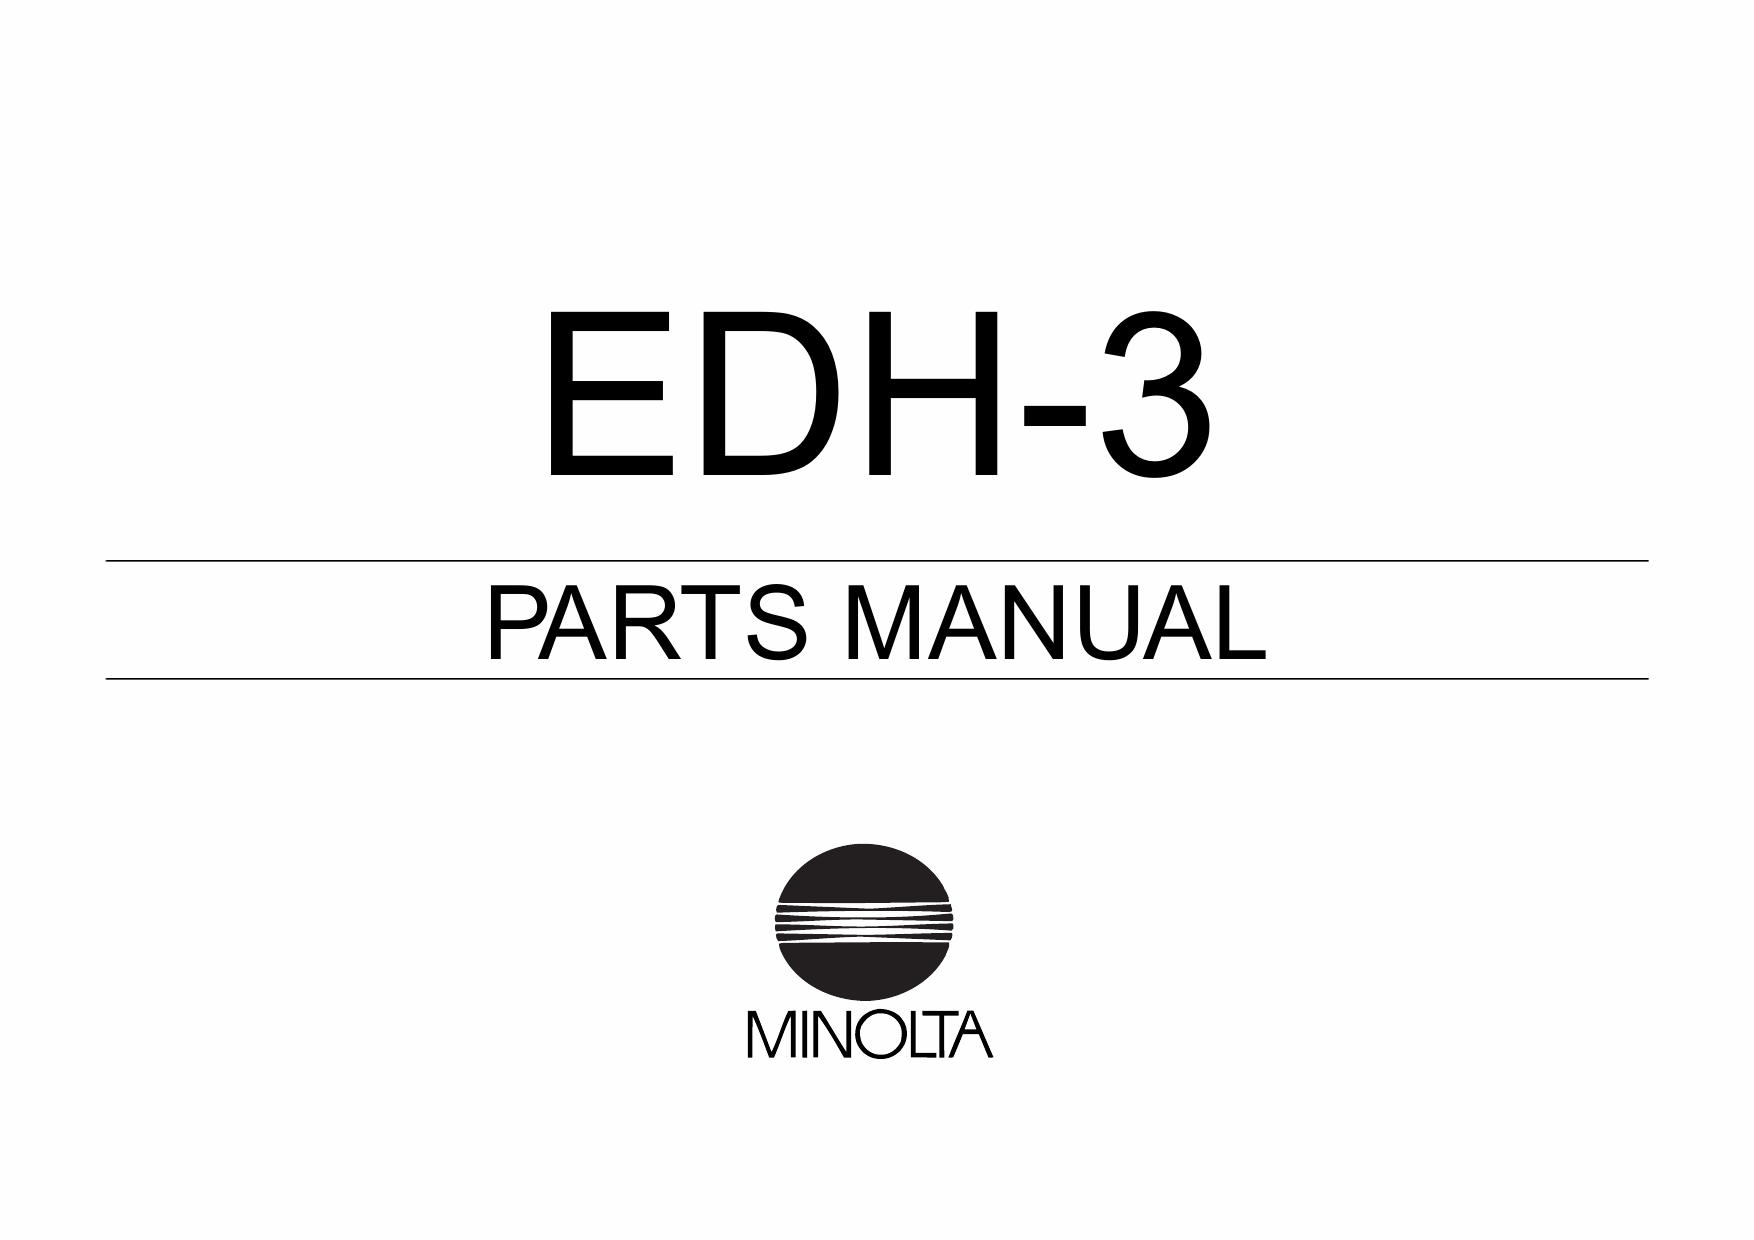 Konica-Minolta Options EDH-3 Parts Manual-1